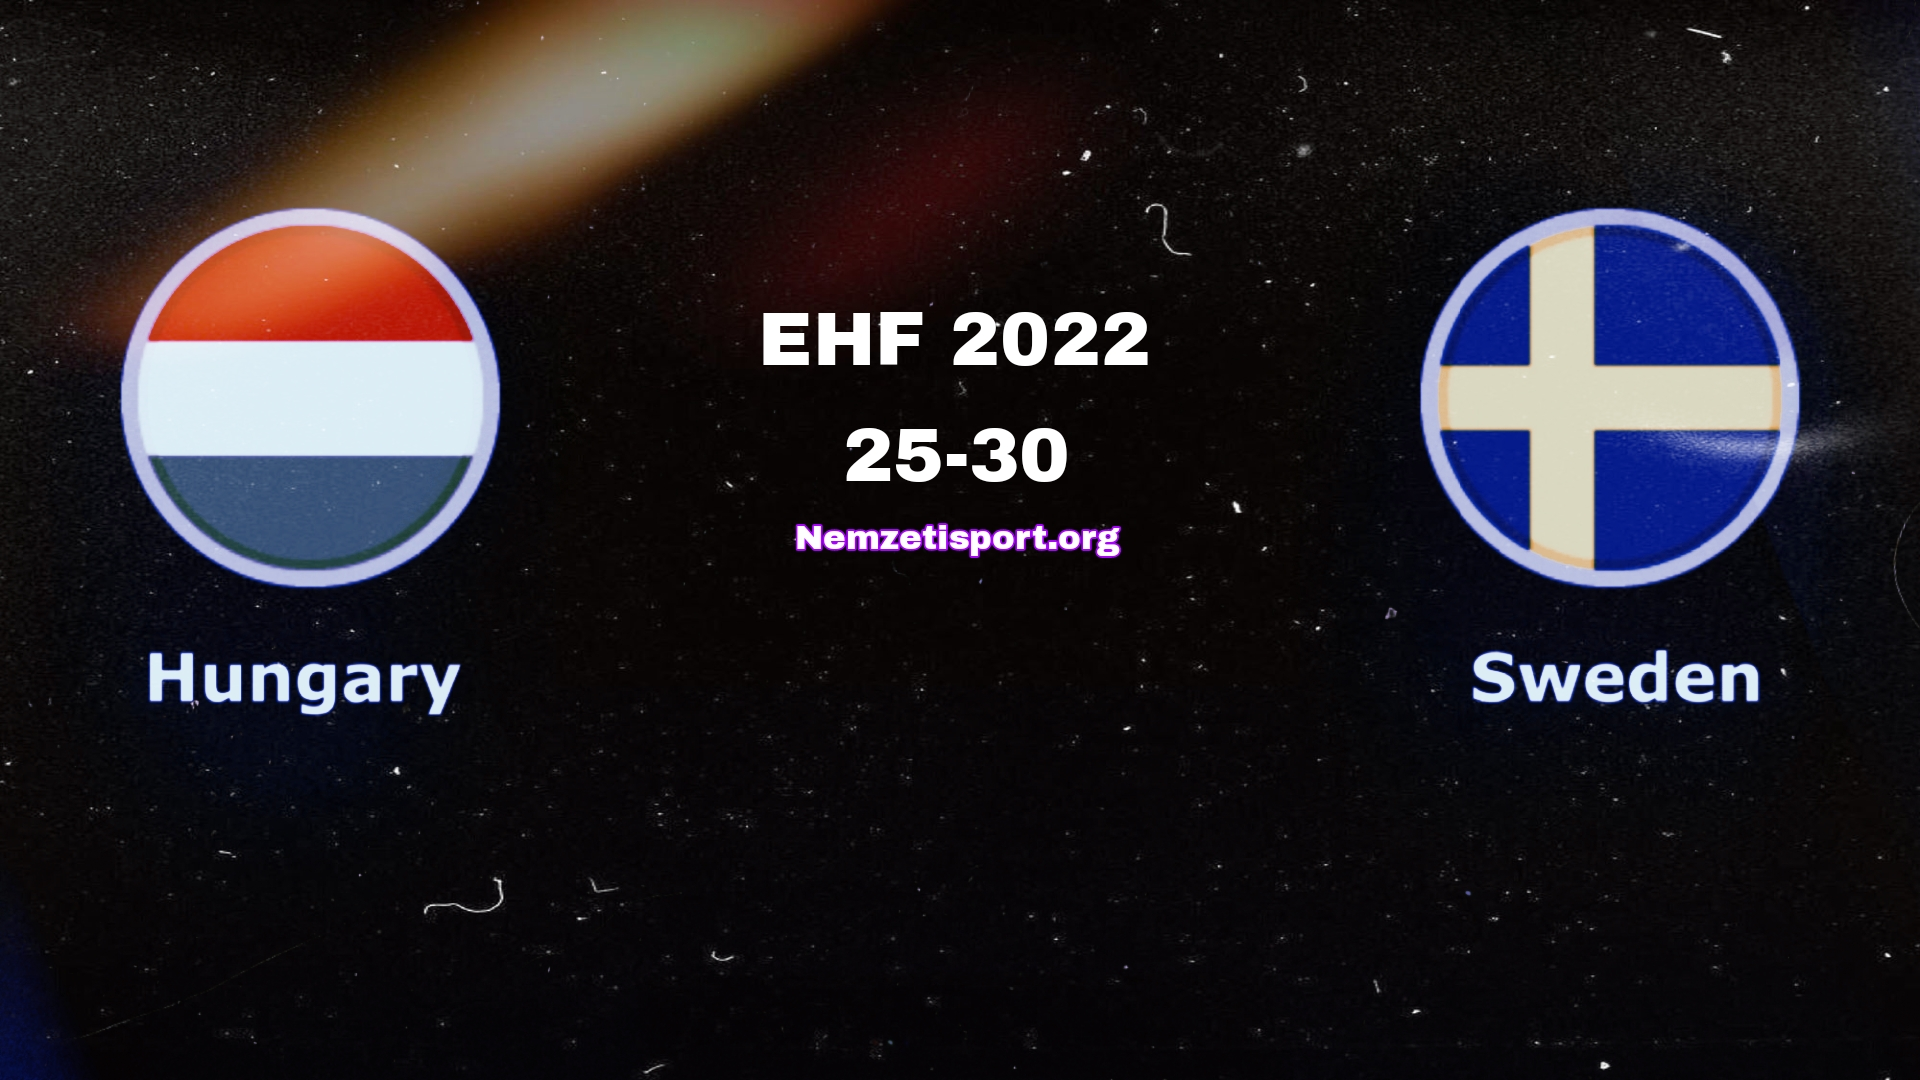 Svédország nyerte az EHF elődöntőt